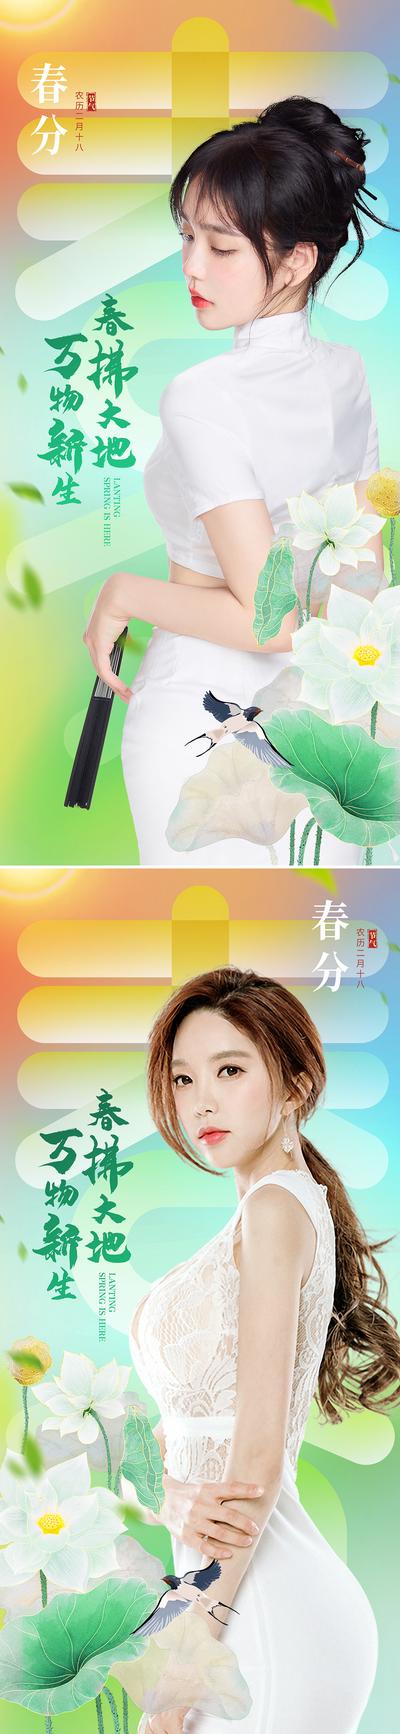 南门网 广告 海报 节气 春分 医美 人物 模特 系列